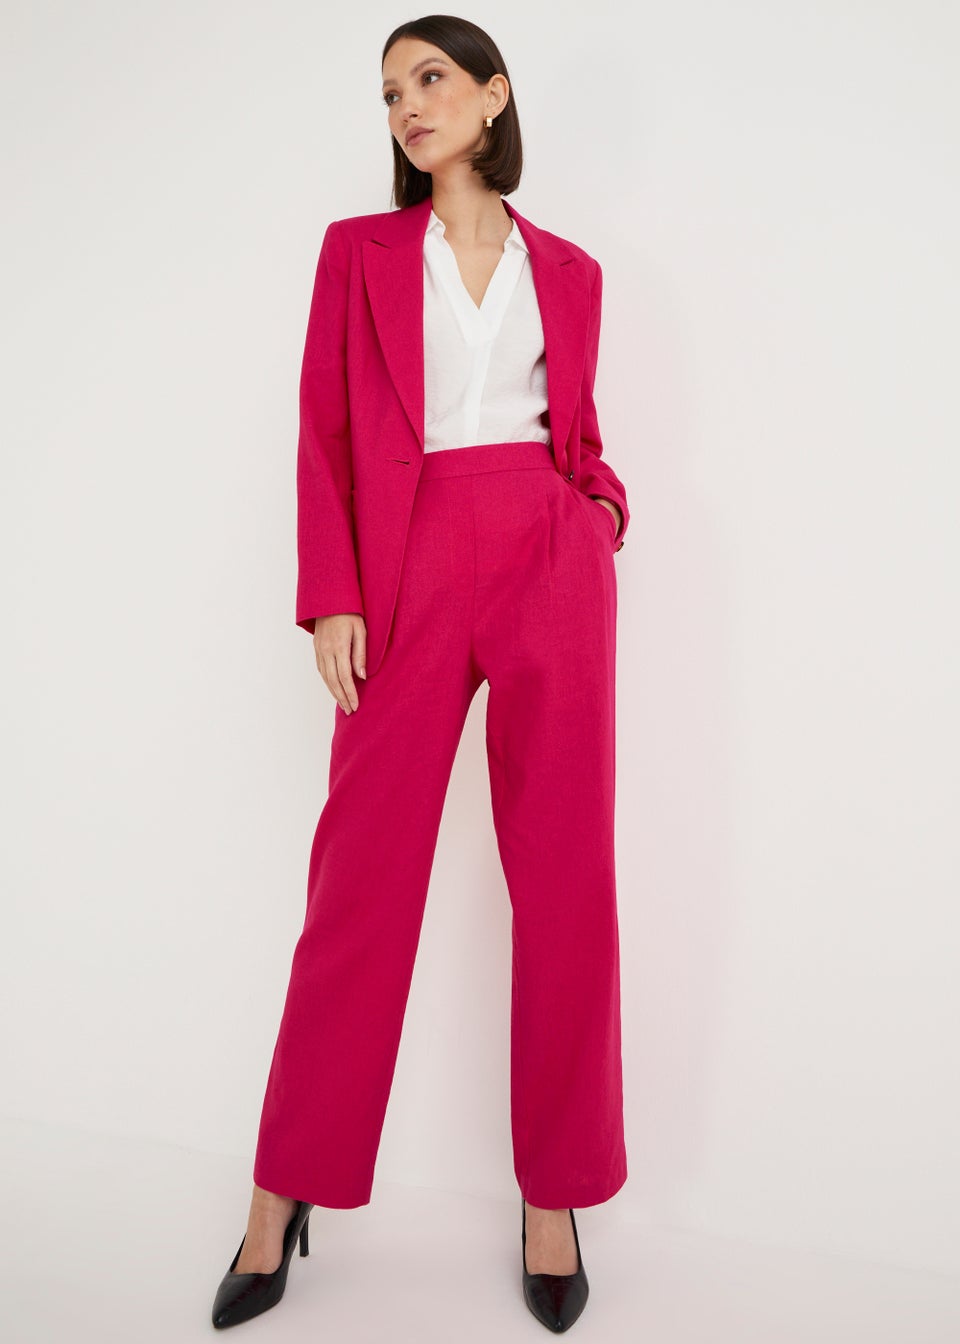 Et Vous Pink Linen Blend Suit Trousers - Matalan